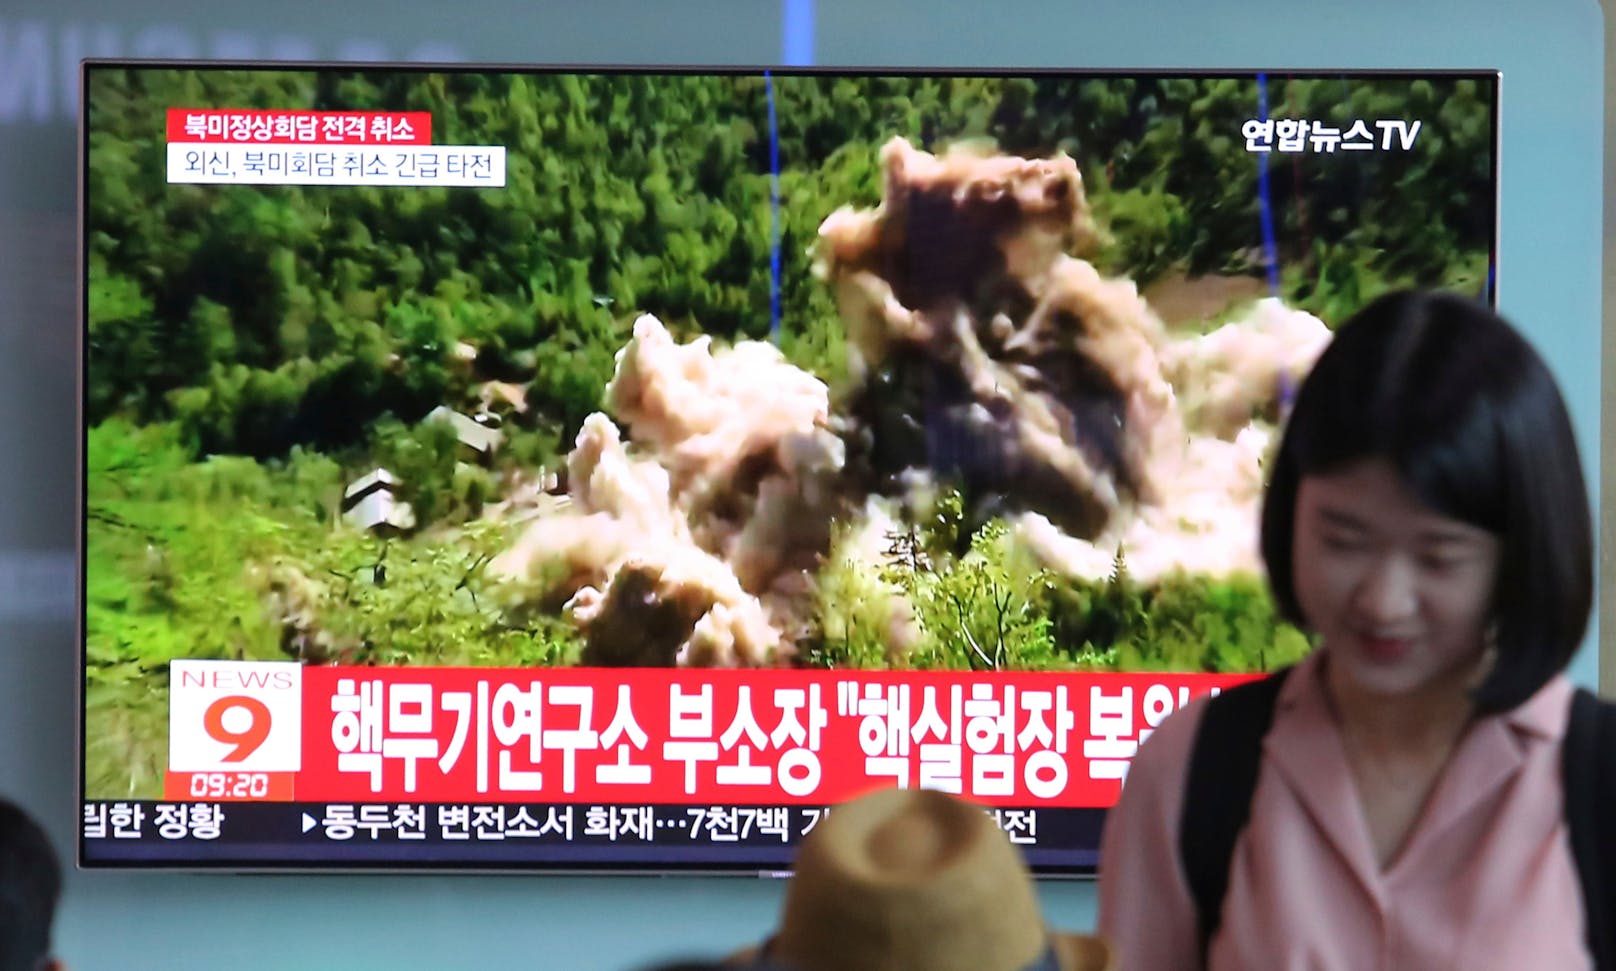 Im nordkoreanischen Punggye-Ri sollen wieder Atomtests stattfinden. Archivbild aus einer Bahnstation in Seoul (Südkorea) aus dem Jahr 2018. 